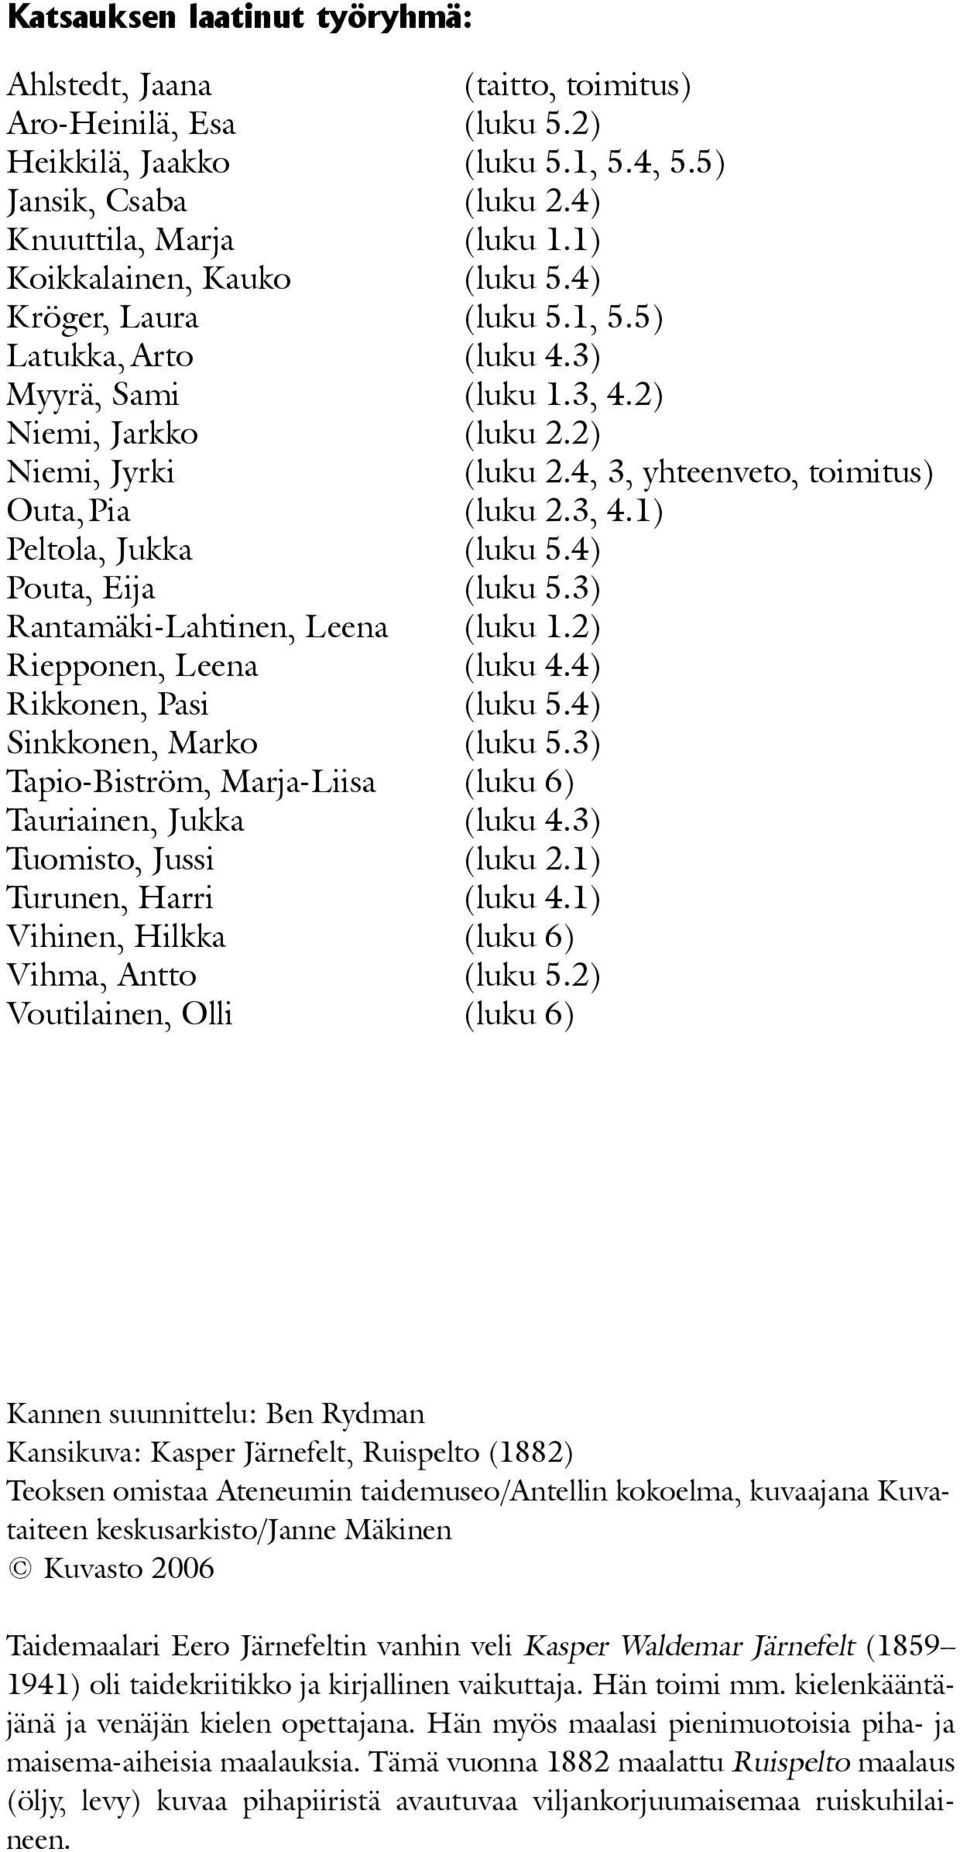 4, 3, yhteenveto, toimitus) Outa, Pia (luku 2.3, 4.1) Peltola, Jukka (luku 5.4) Pouta, Eija (luku 5.3) Rantamäki-Lahtinen, Leena (luku 1.2) Riepponen, Leena (luku 4.4) Rikkonen, Pasi (luku 5.